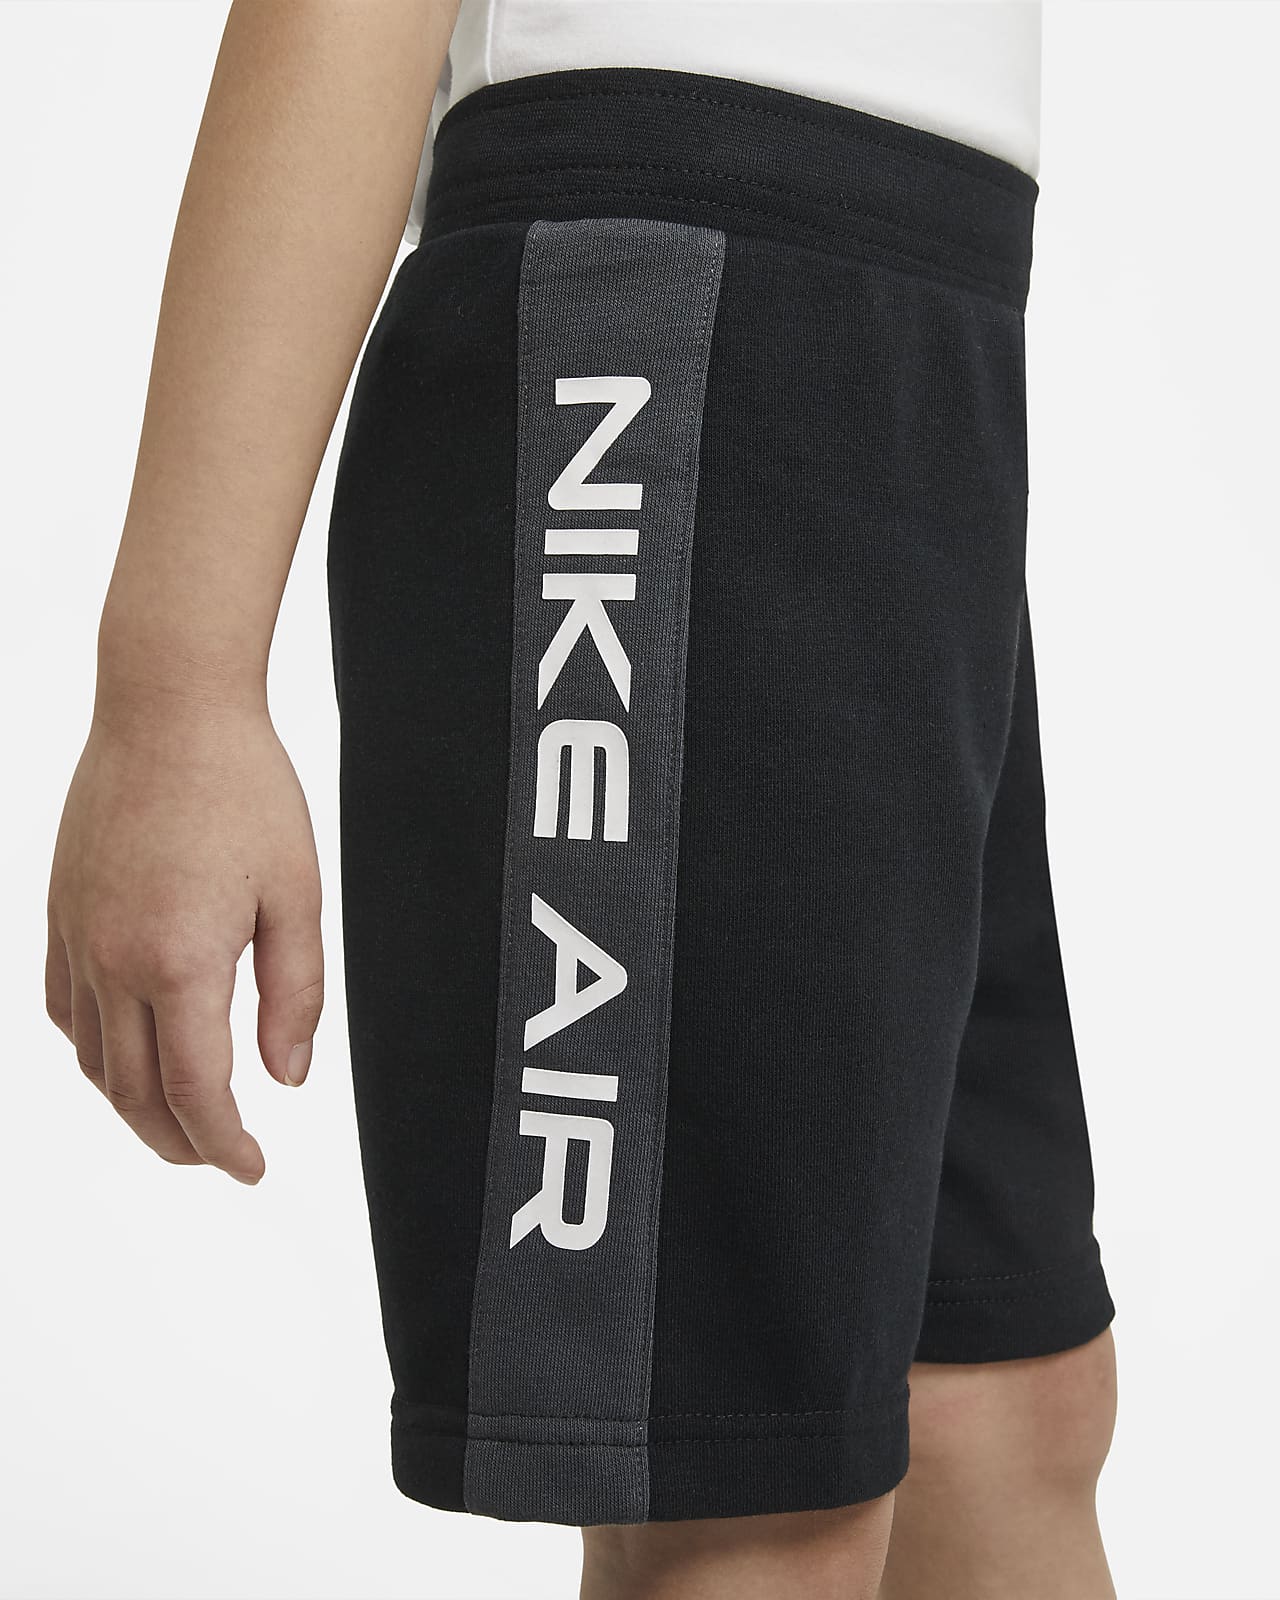 nike air shorts and t shirt